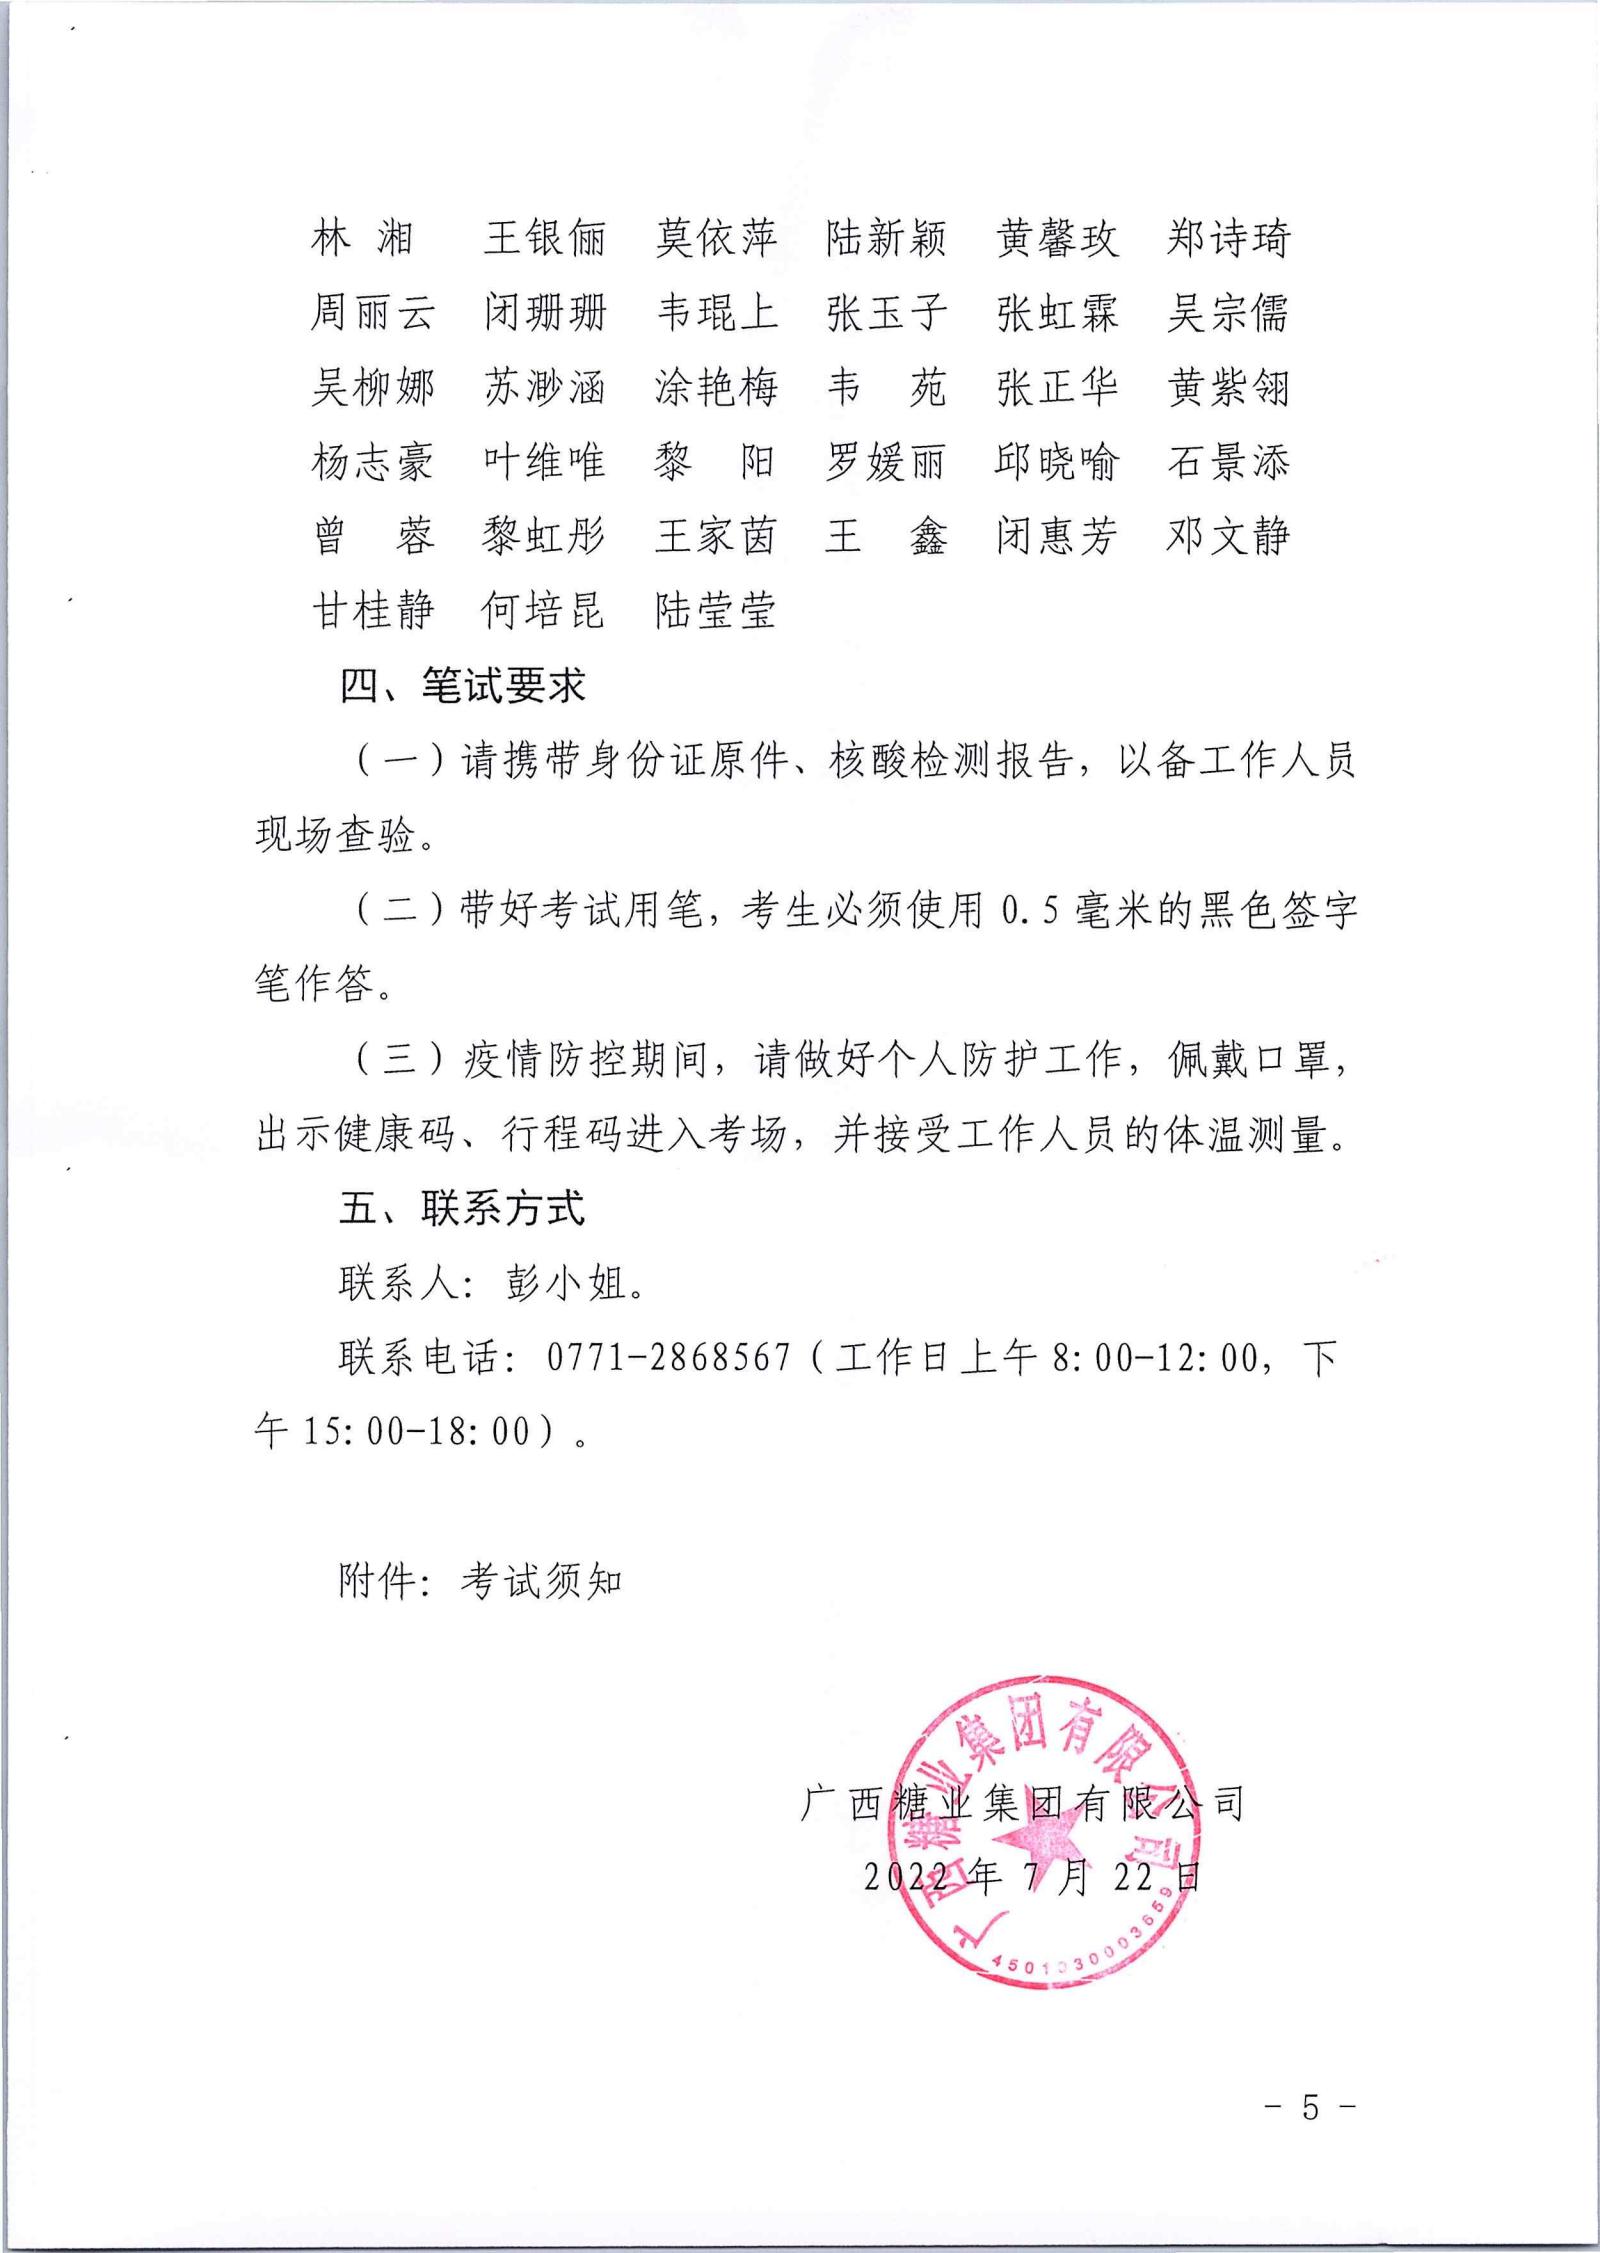 完美体育app(中国)股份有限公司官网有限公司2022年第一批社会公开招聘笔试公告_04.jpg